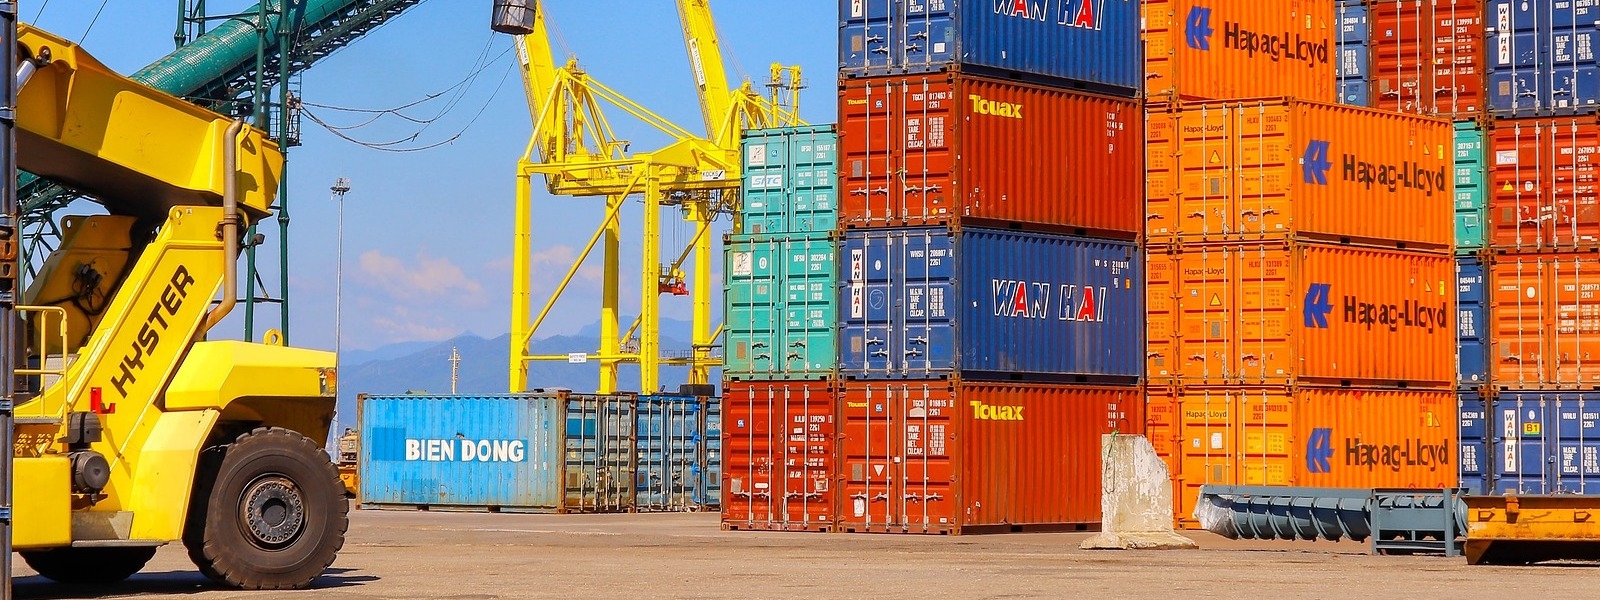 Porti: preoccupazioni sulle sorti del sistema portuale italiano. Segretari Generali chiedono incontro urgente a Ministra